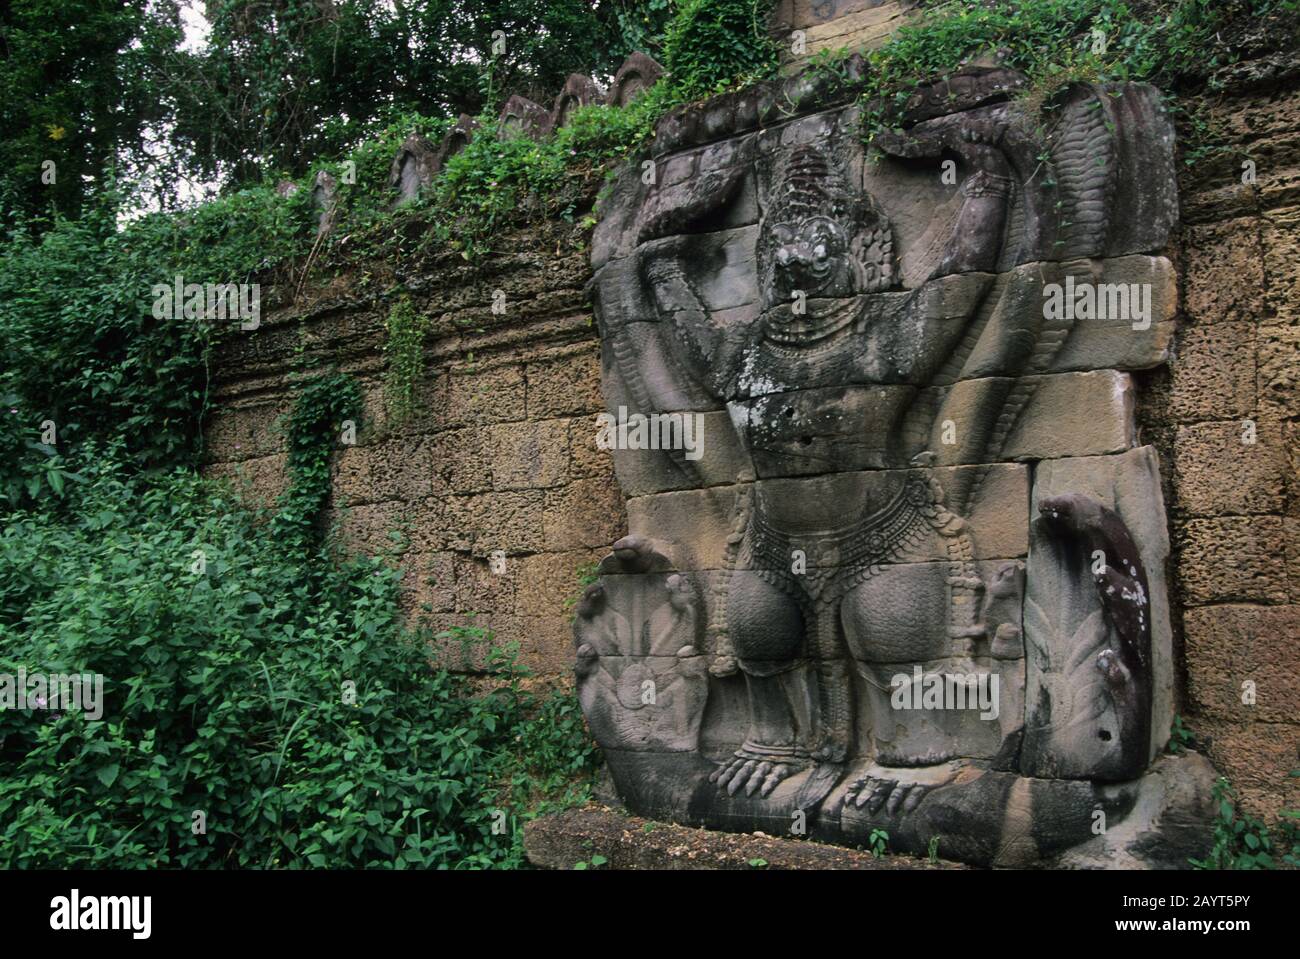 Una scultura in pietra di Garuda, un grande uccello mitico, una creatura simile ad un uccello, o un uccello umanoide che appare sia nella mitologia indù e buddista a Preah Khan Foto Stock